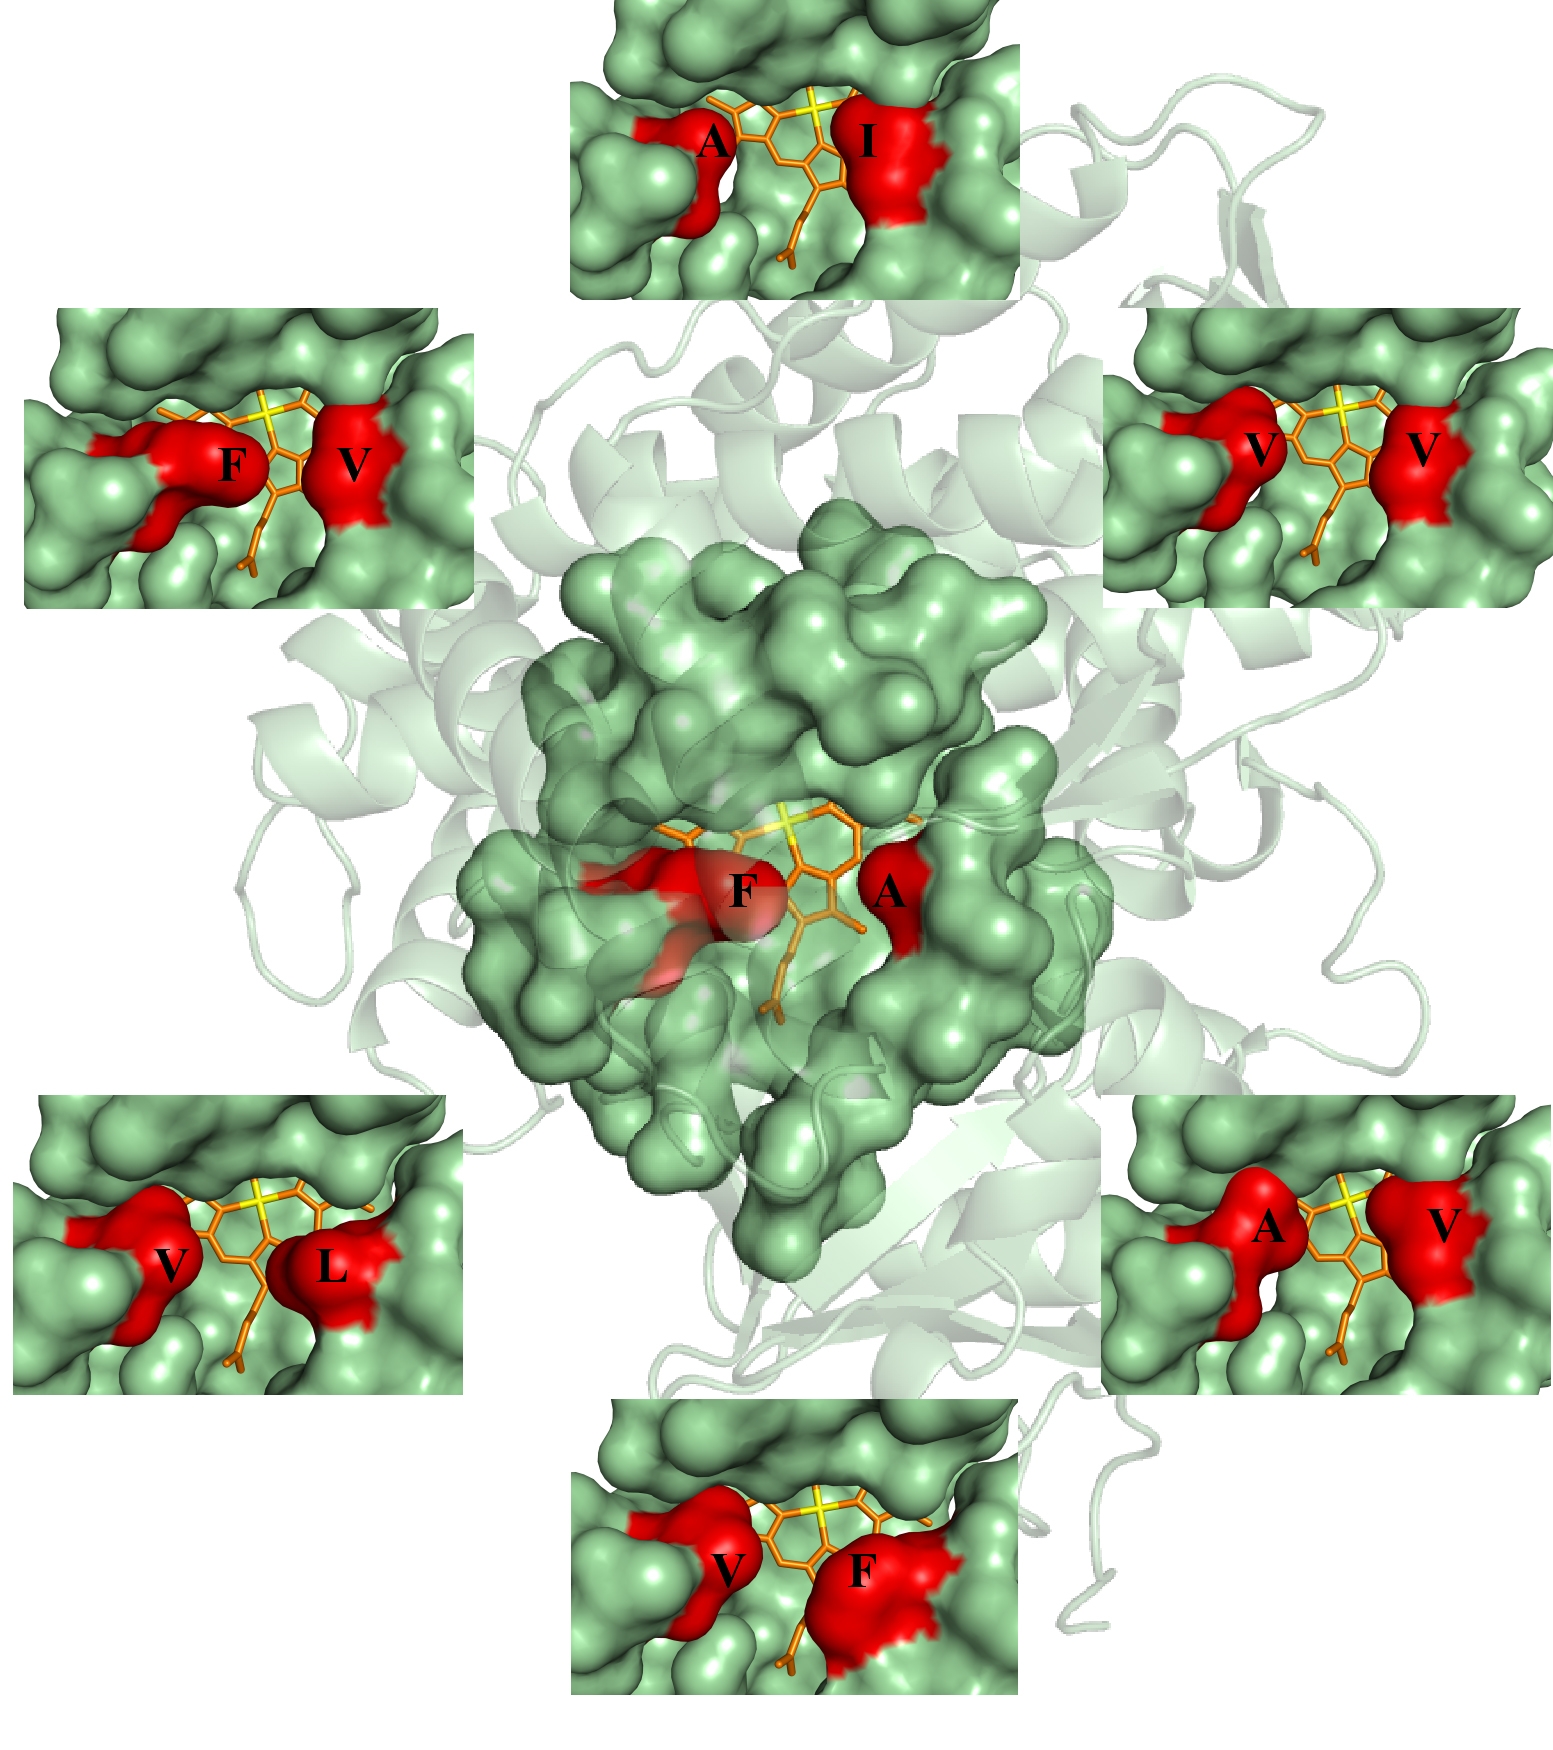 Änderung des Zugangs zum katalytisch aktiven Häm (gelb) in einer bakteriellen Monooxygenase durch Mutation von zwei 